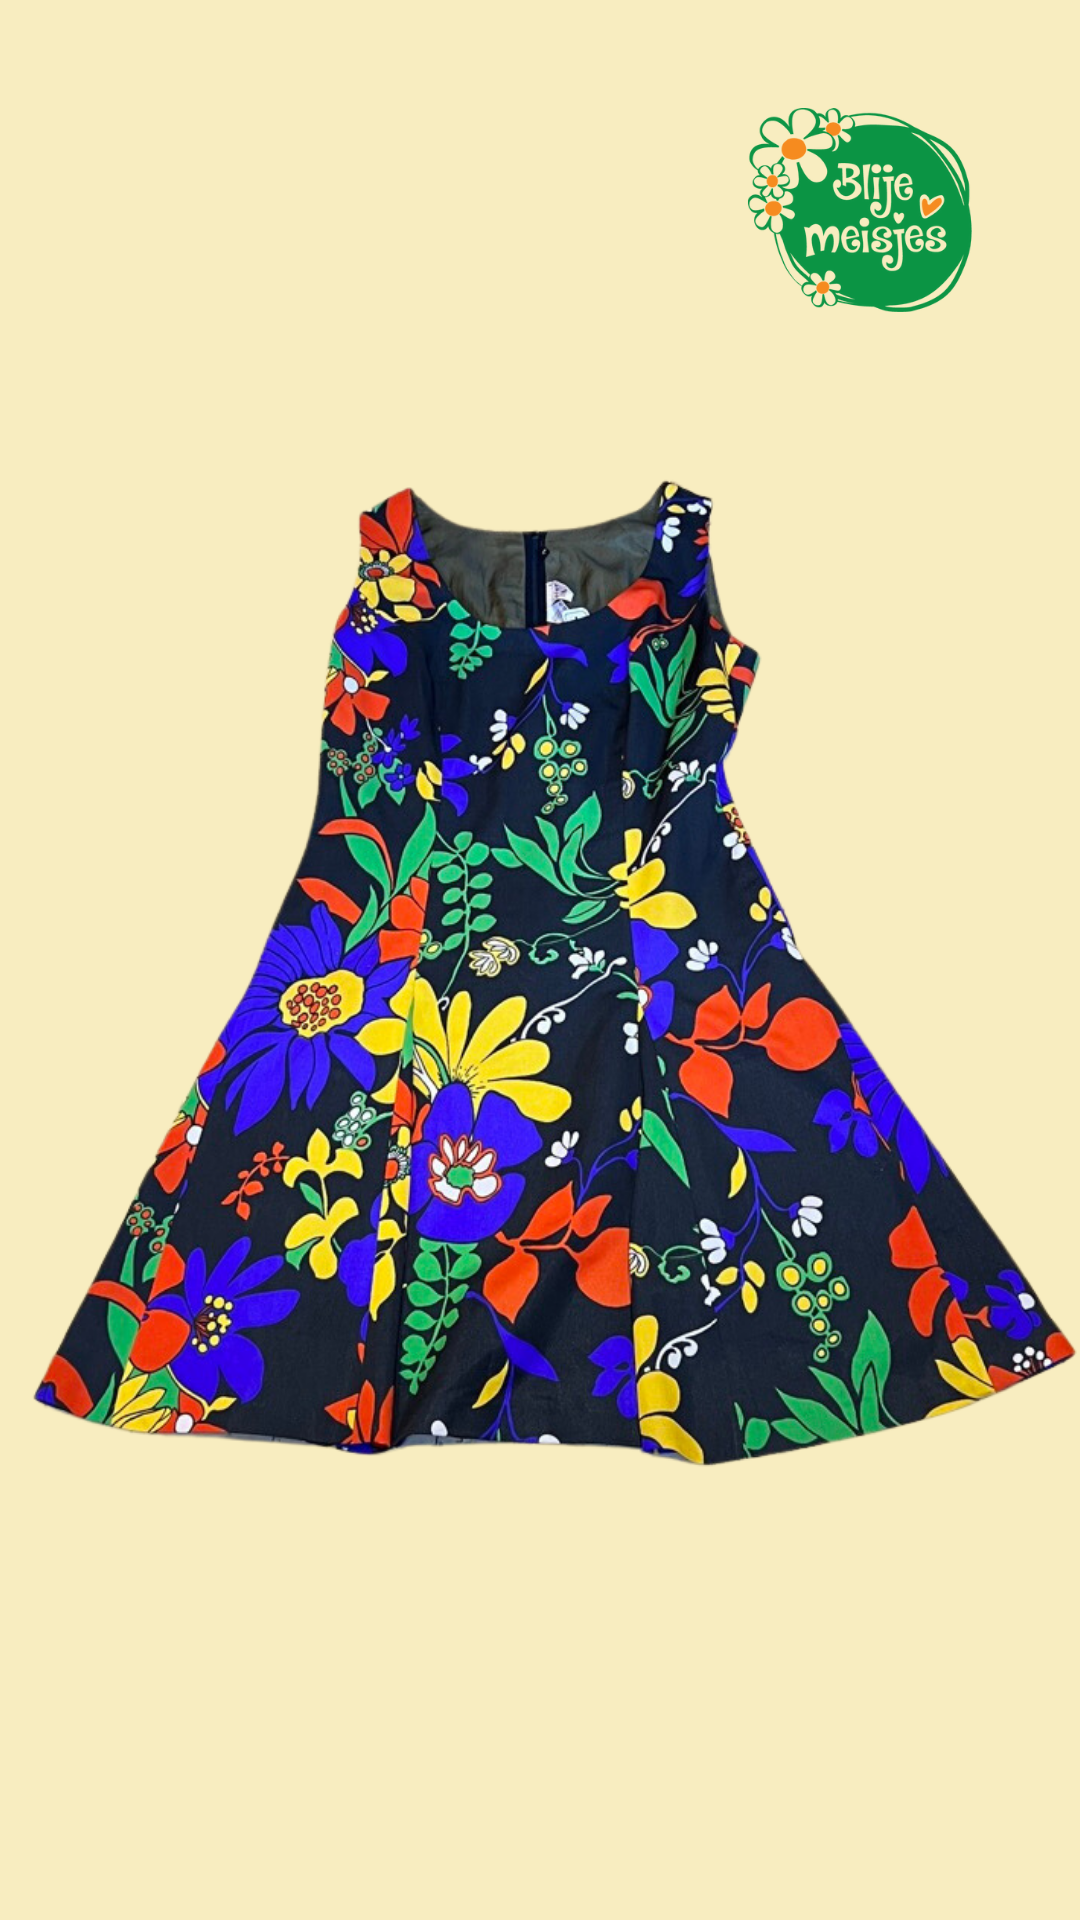 de eerste strategie Spin Vintage jurk zwart met fel gekleurde bloemen | Blije Meisjes